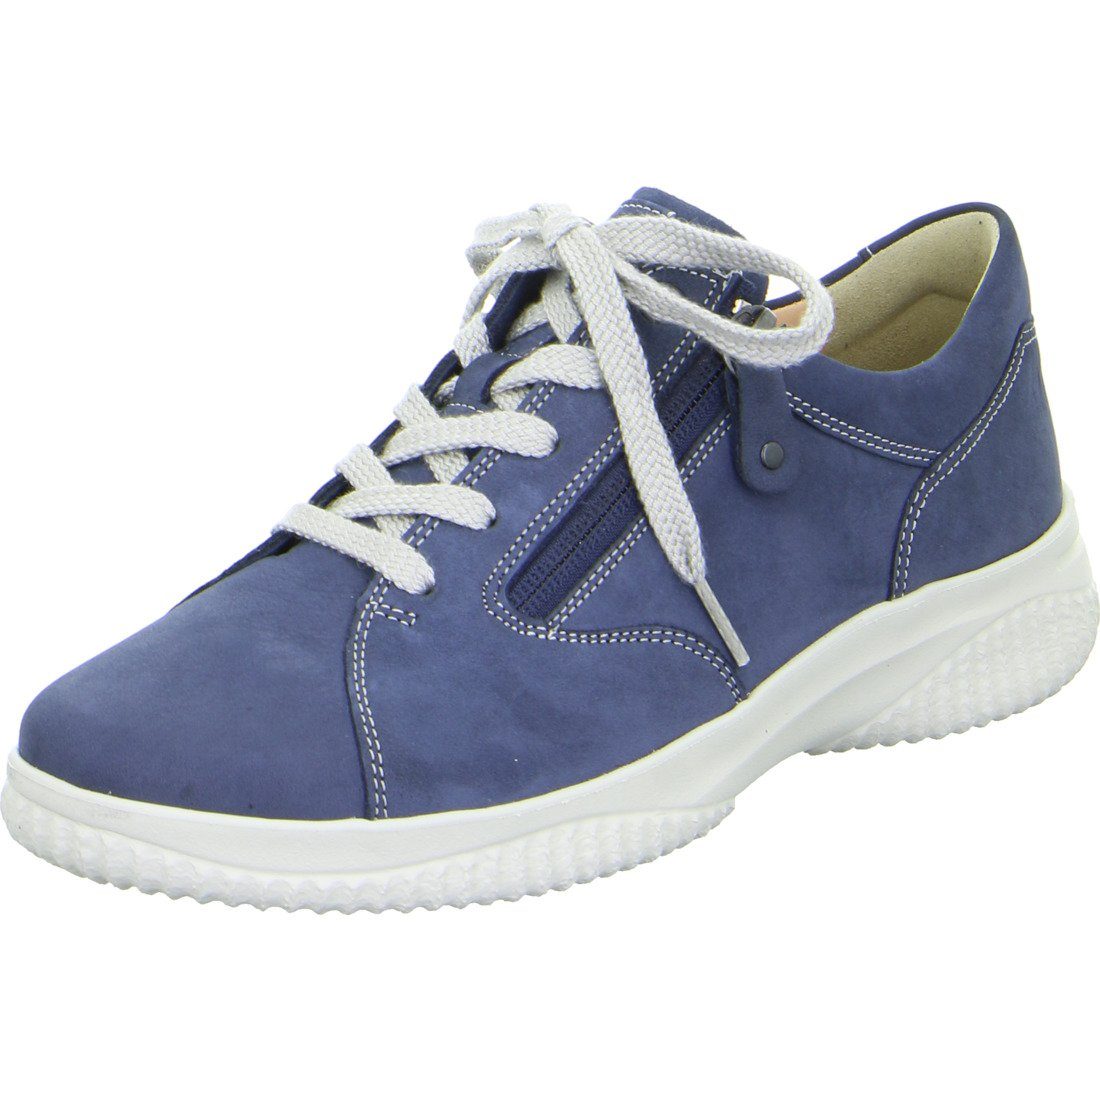 Hartjes Hartjes Schuhe, Schnürschuh Ethno - Nubuk Damen Schnürschuh blau 048787 | Schnürschuhe